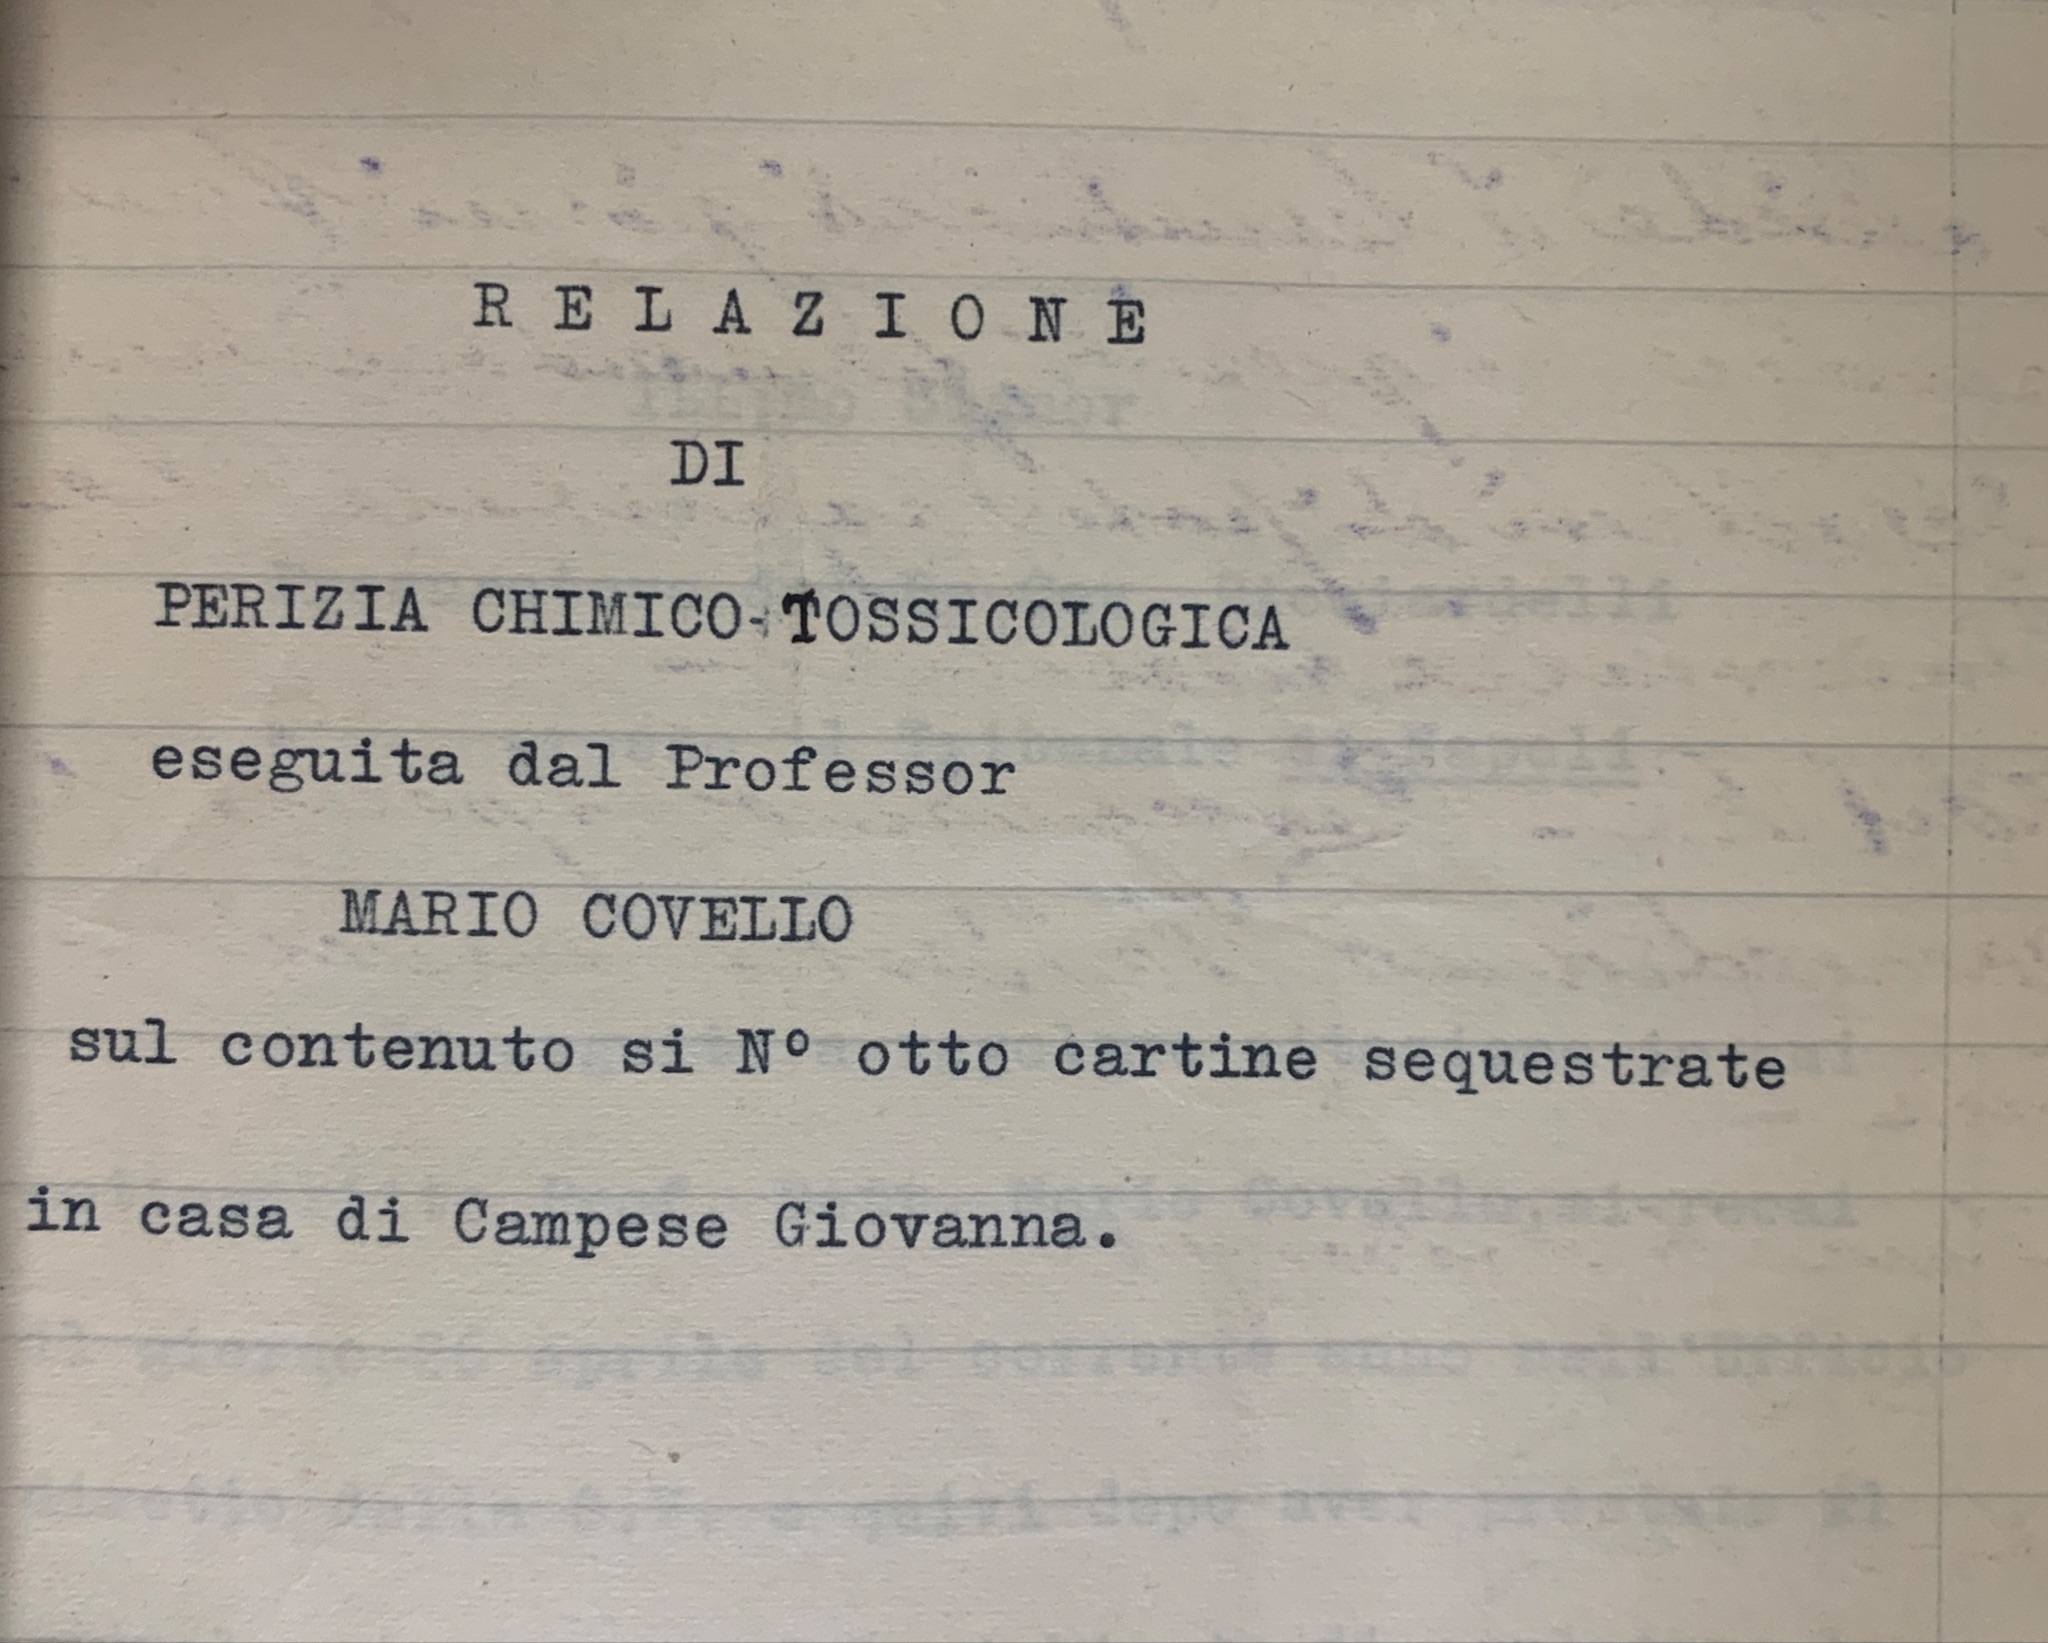 Relazione di perizia chimico-tossicologica nel processo contro Giovanna Campese. Napoli, 1934